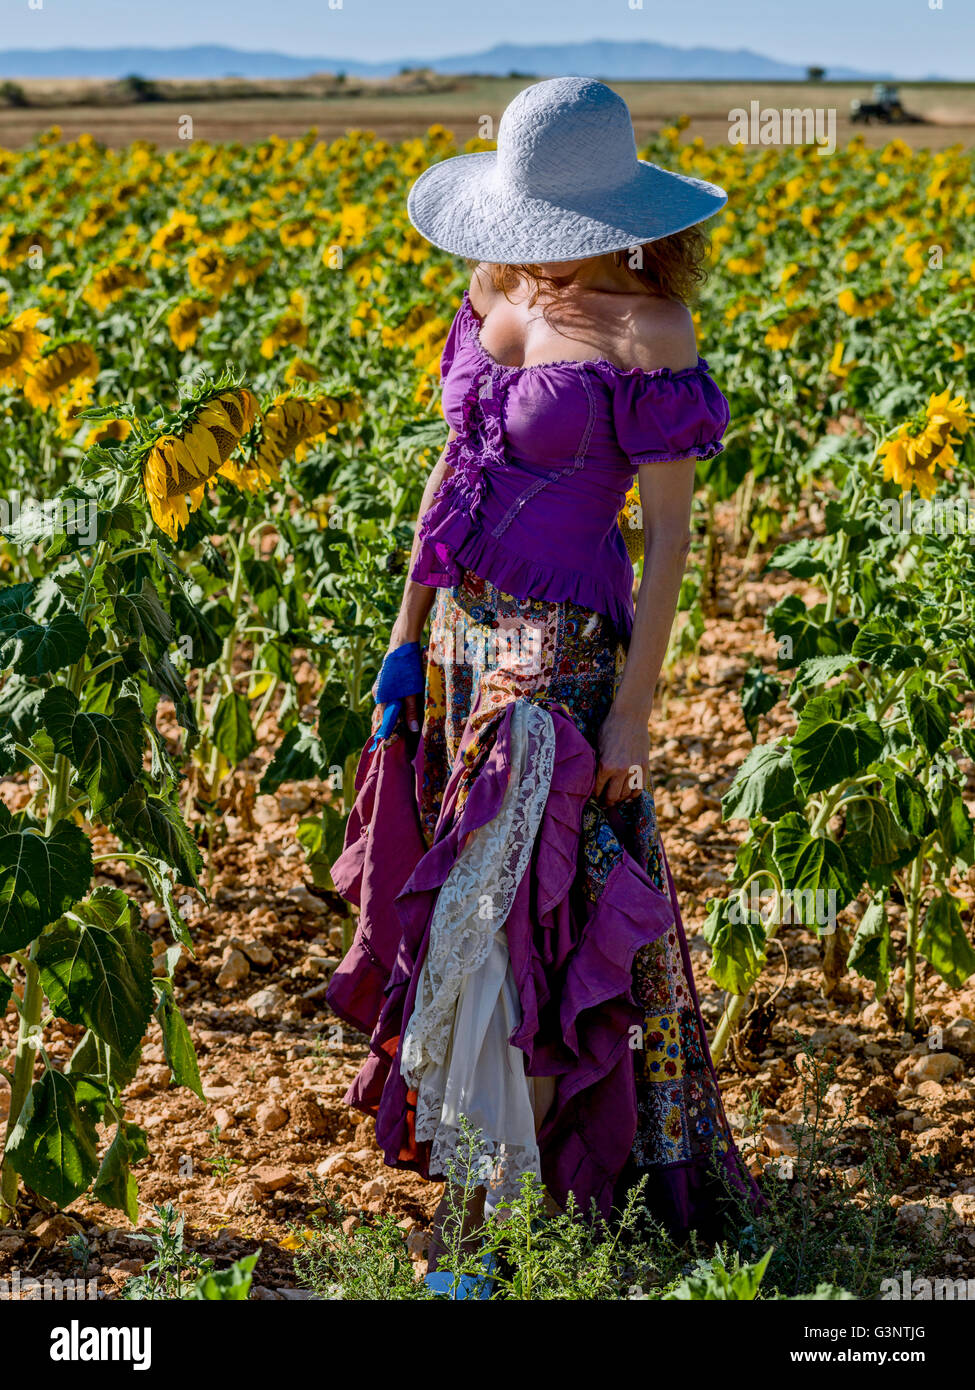 Woman with hat dans un champ de tournesols Banque D'Images